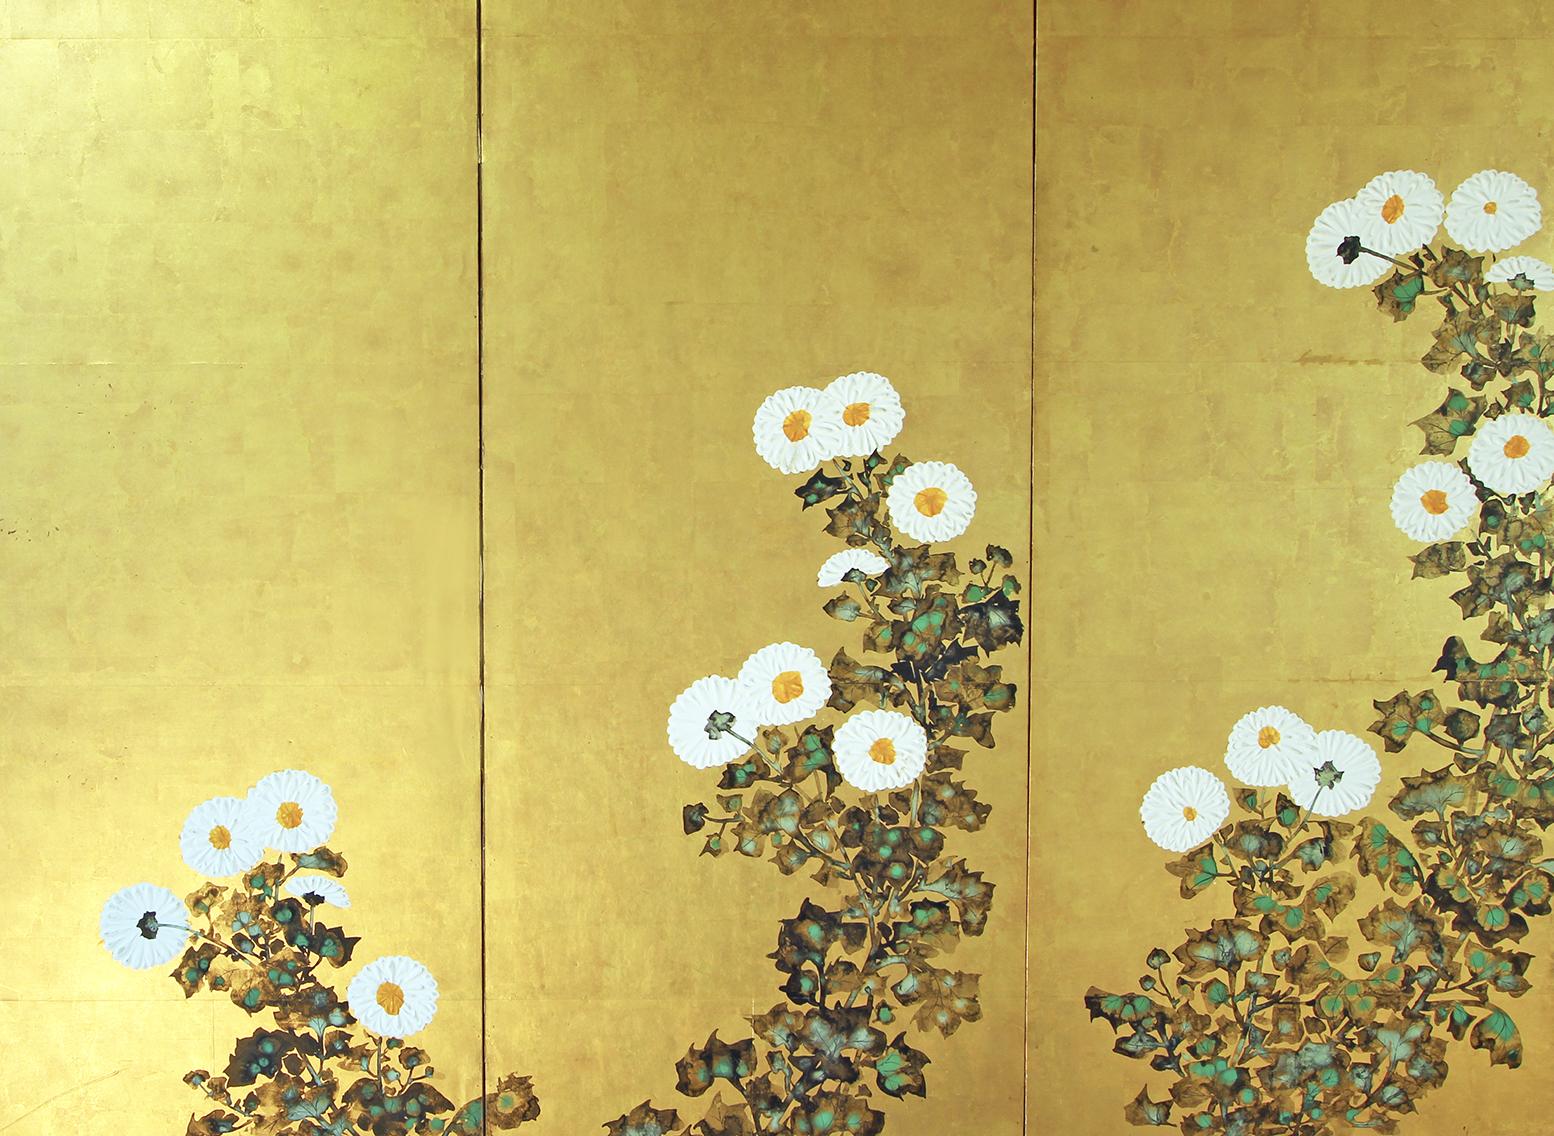 Paesaggio primaverile di ignoto pittore della scuola Rinpa, XIX secolo, inchiostro a sei pannelli dipinto su foglia oro su carta di riso.
I fiori sono realizzati con la tecnica del 